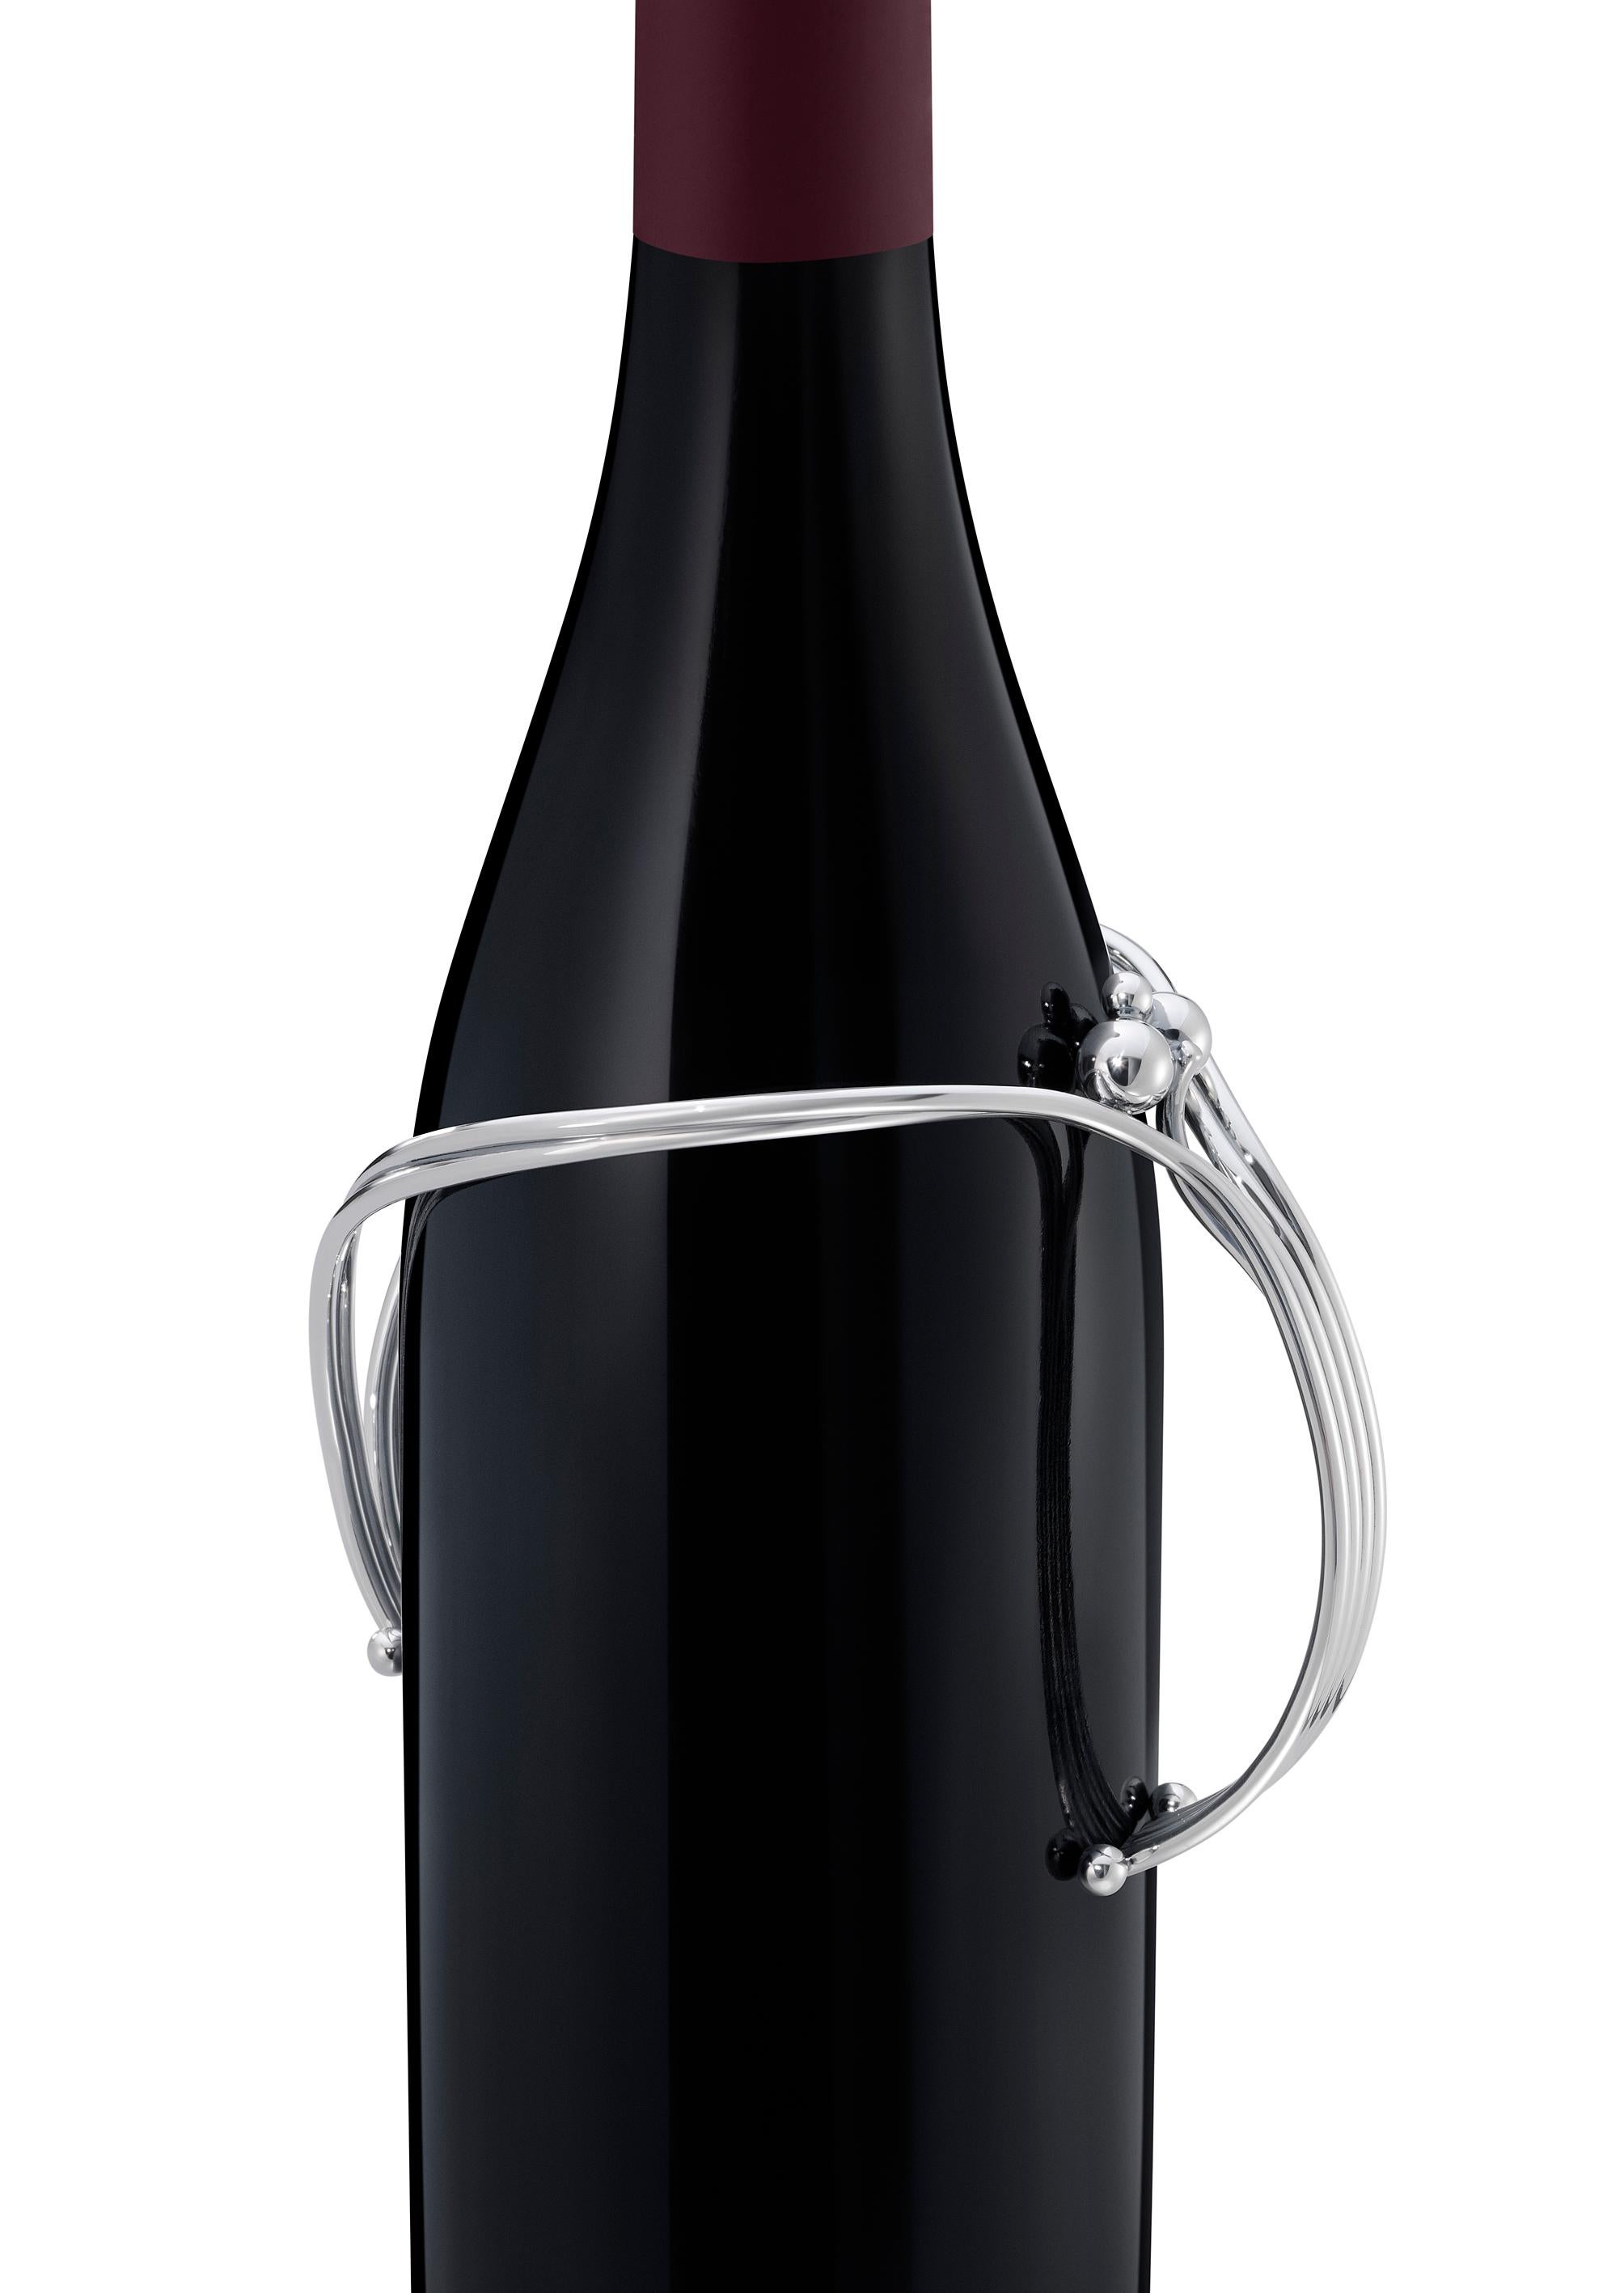 Klassischer Weinflaschenhalter von Harald Nielsen. Passt über eine Standard-Weinflasche und bildet einen Griff zum Ausgießen.
 